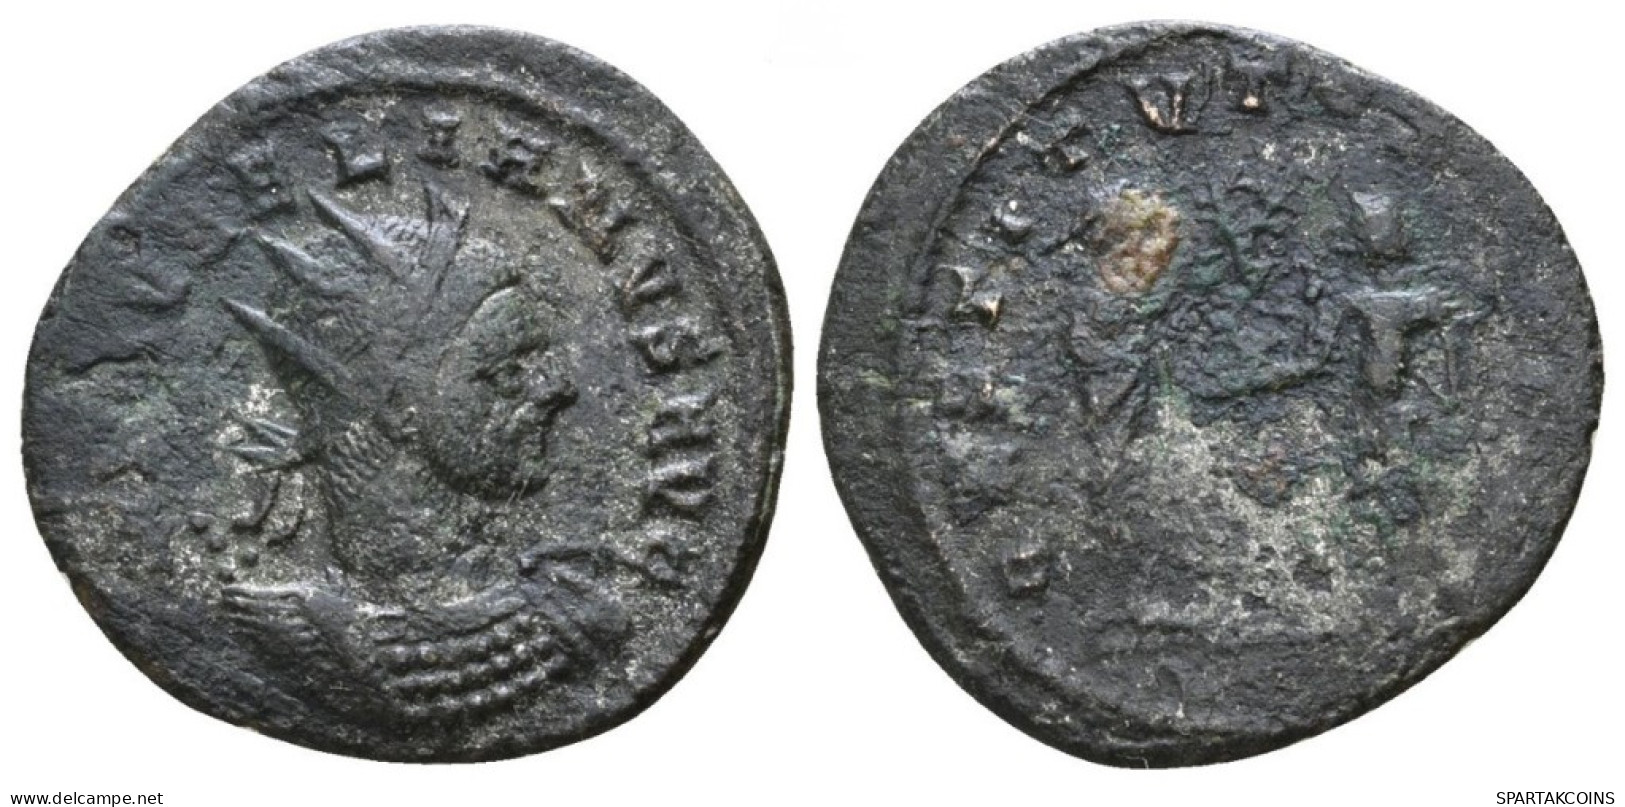 AURELIAN ANTONINIANUS Caesar 2.74g/21mm #ANT1267.12.F.A - Der Soldatenkaiser (die Militärkrise) (235 / 284)